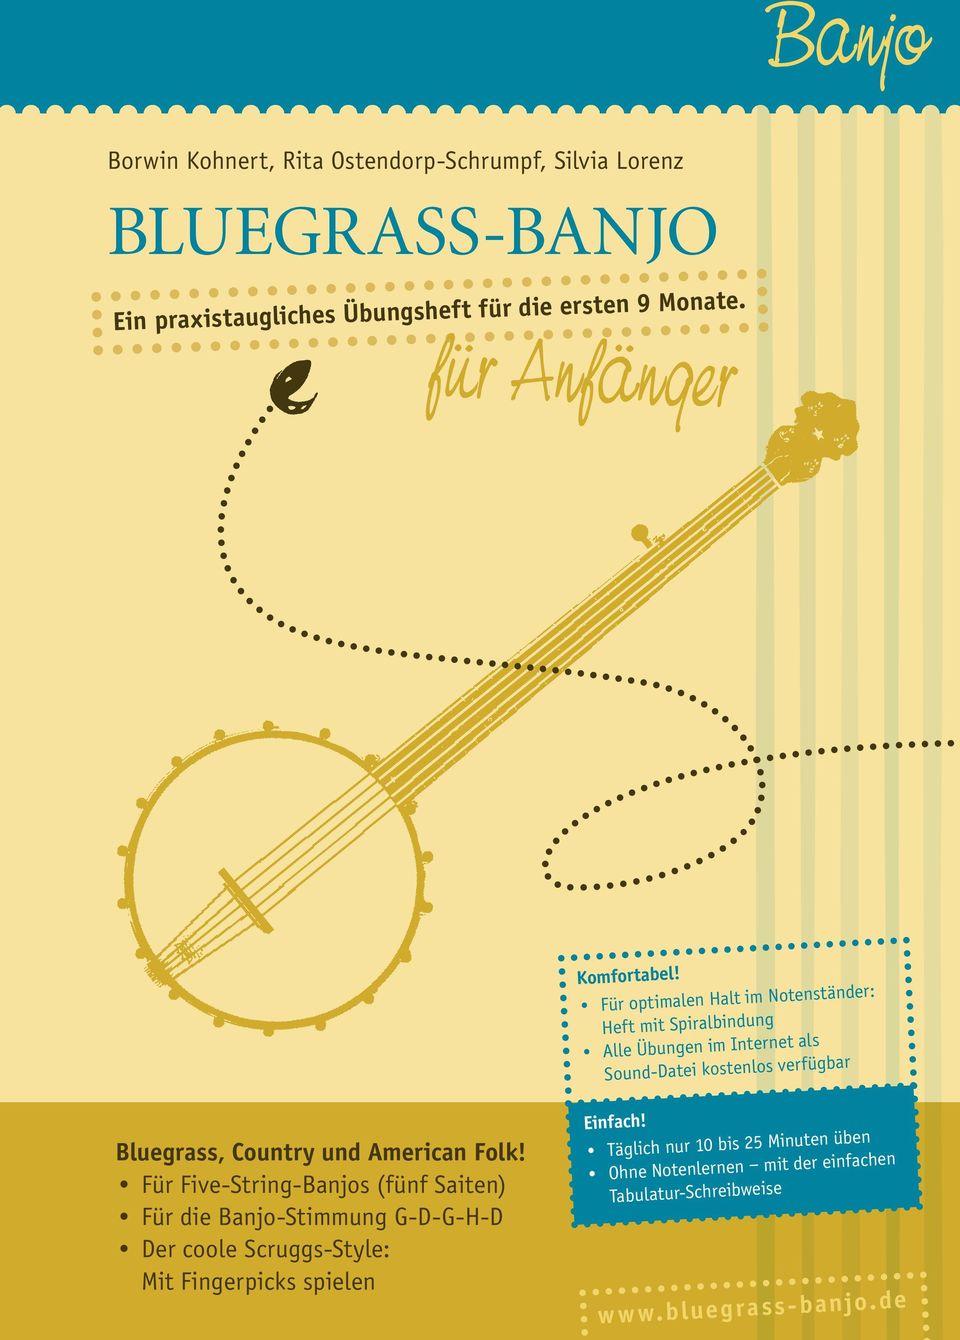 Für Five-String-Banjos (fünf Saiten) Für die Banjo-Stimmung G-D-G-H-D Der coole Scruggs-Style: Mit Fingerpicks spielen Komfortabel!